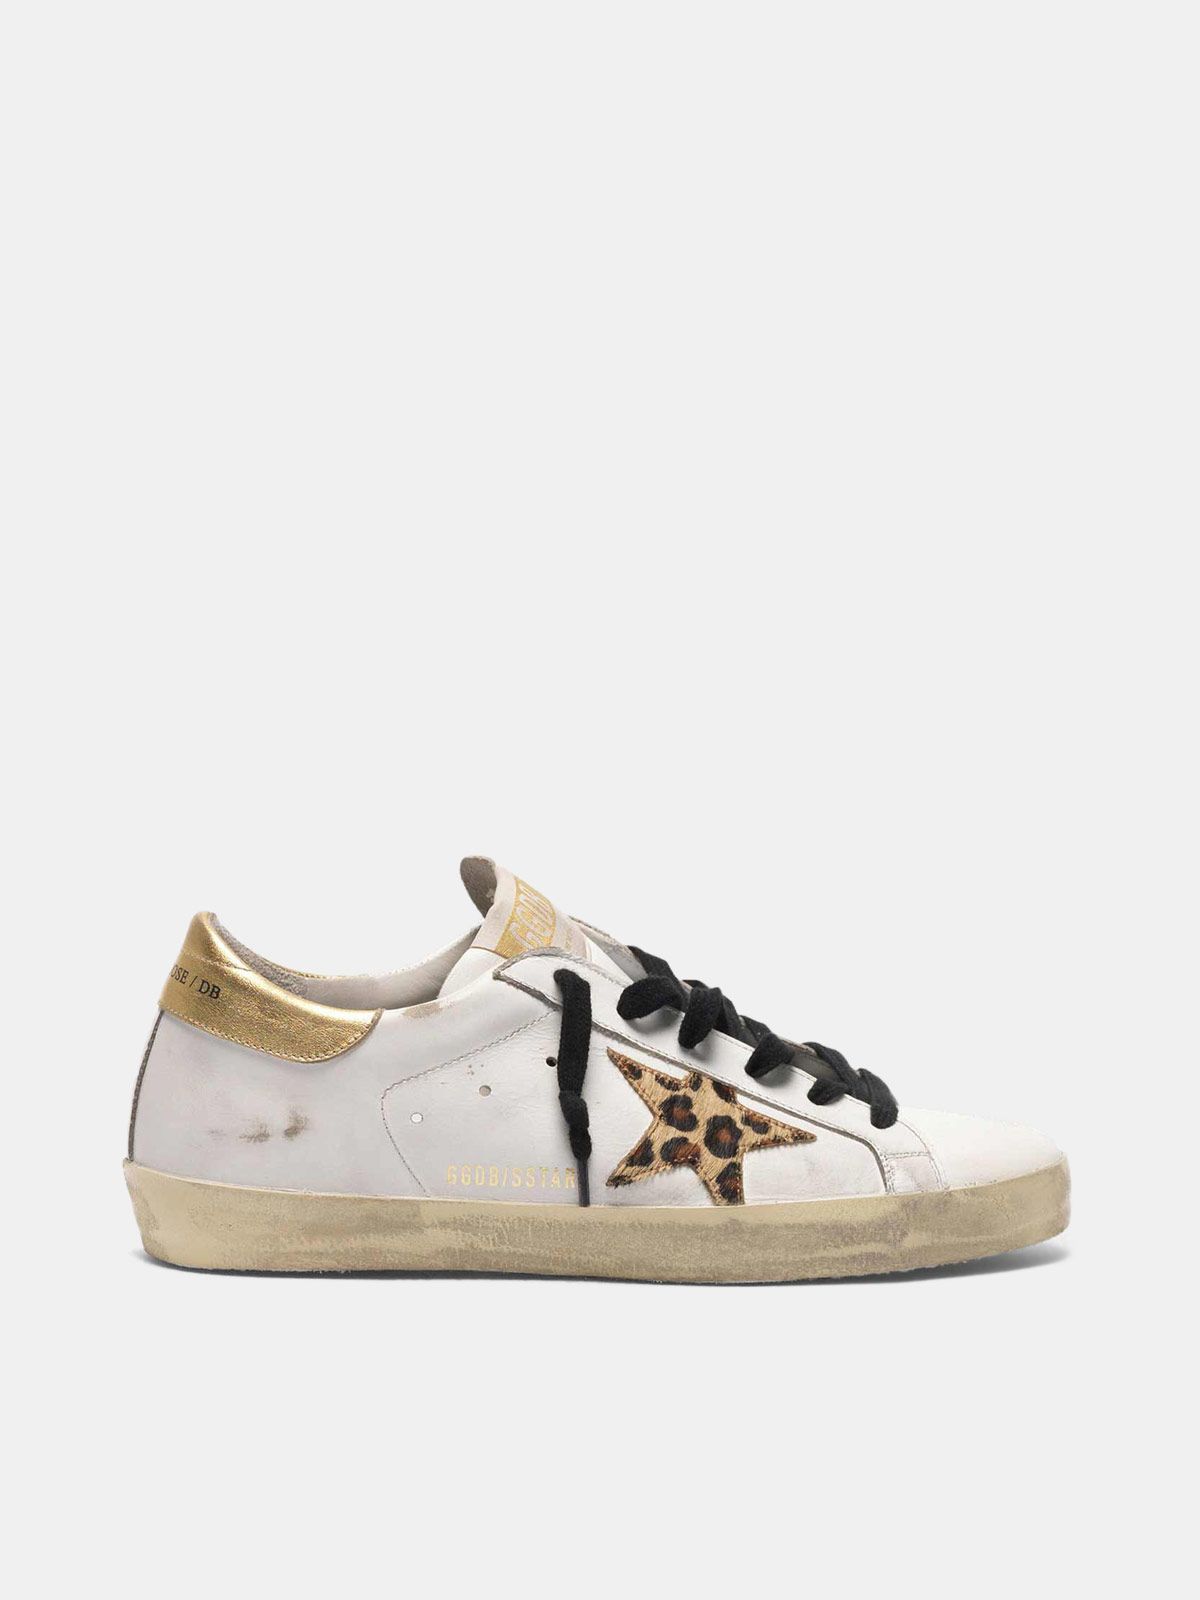 golden goose sneakers cheetah